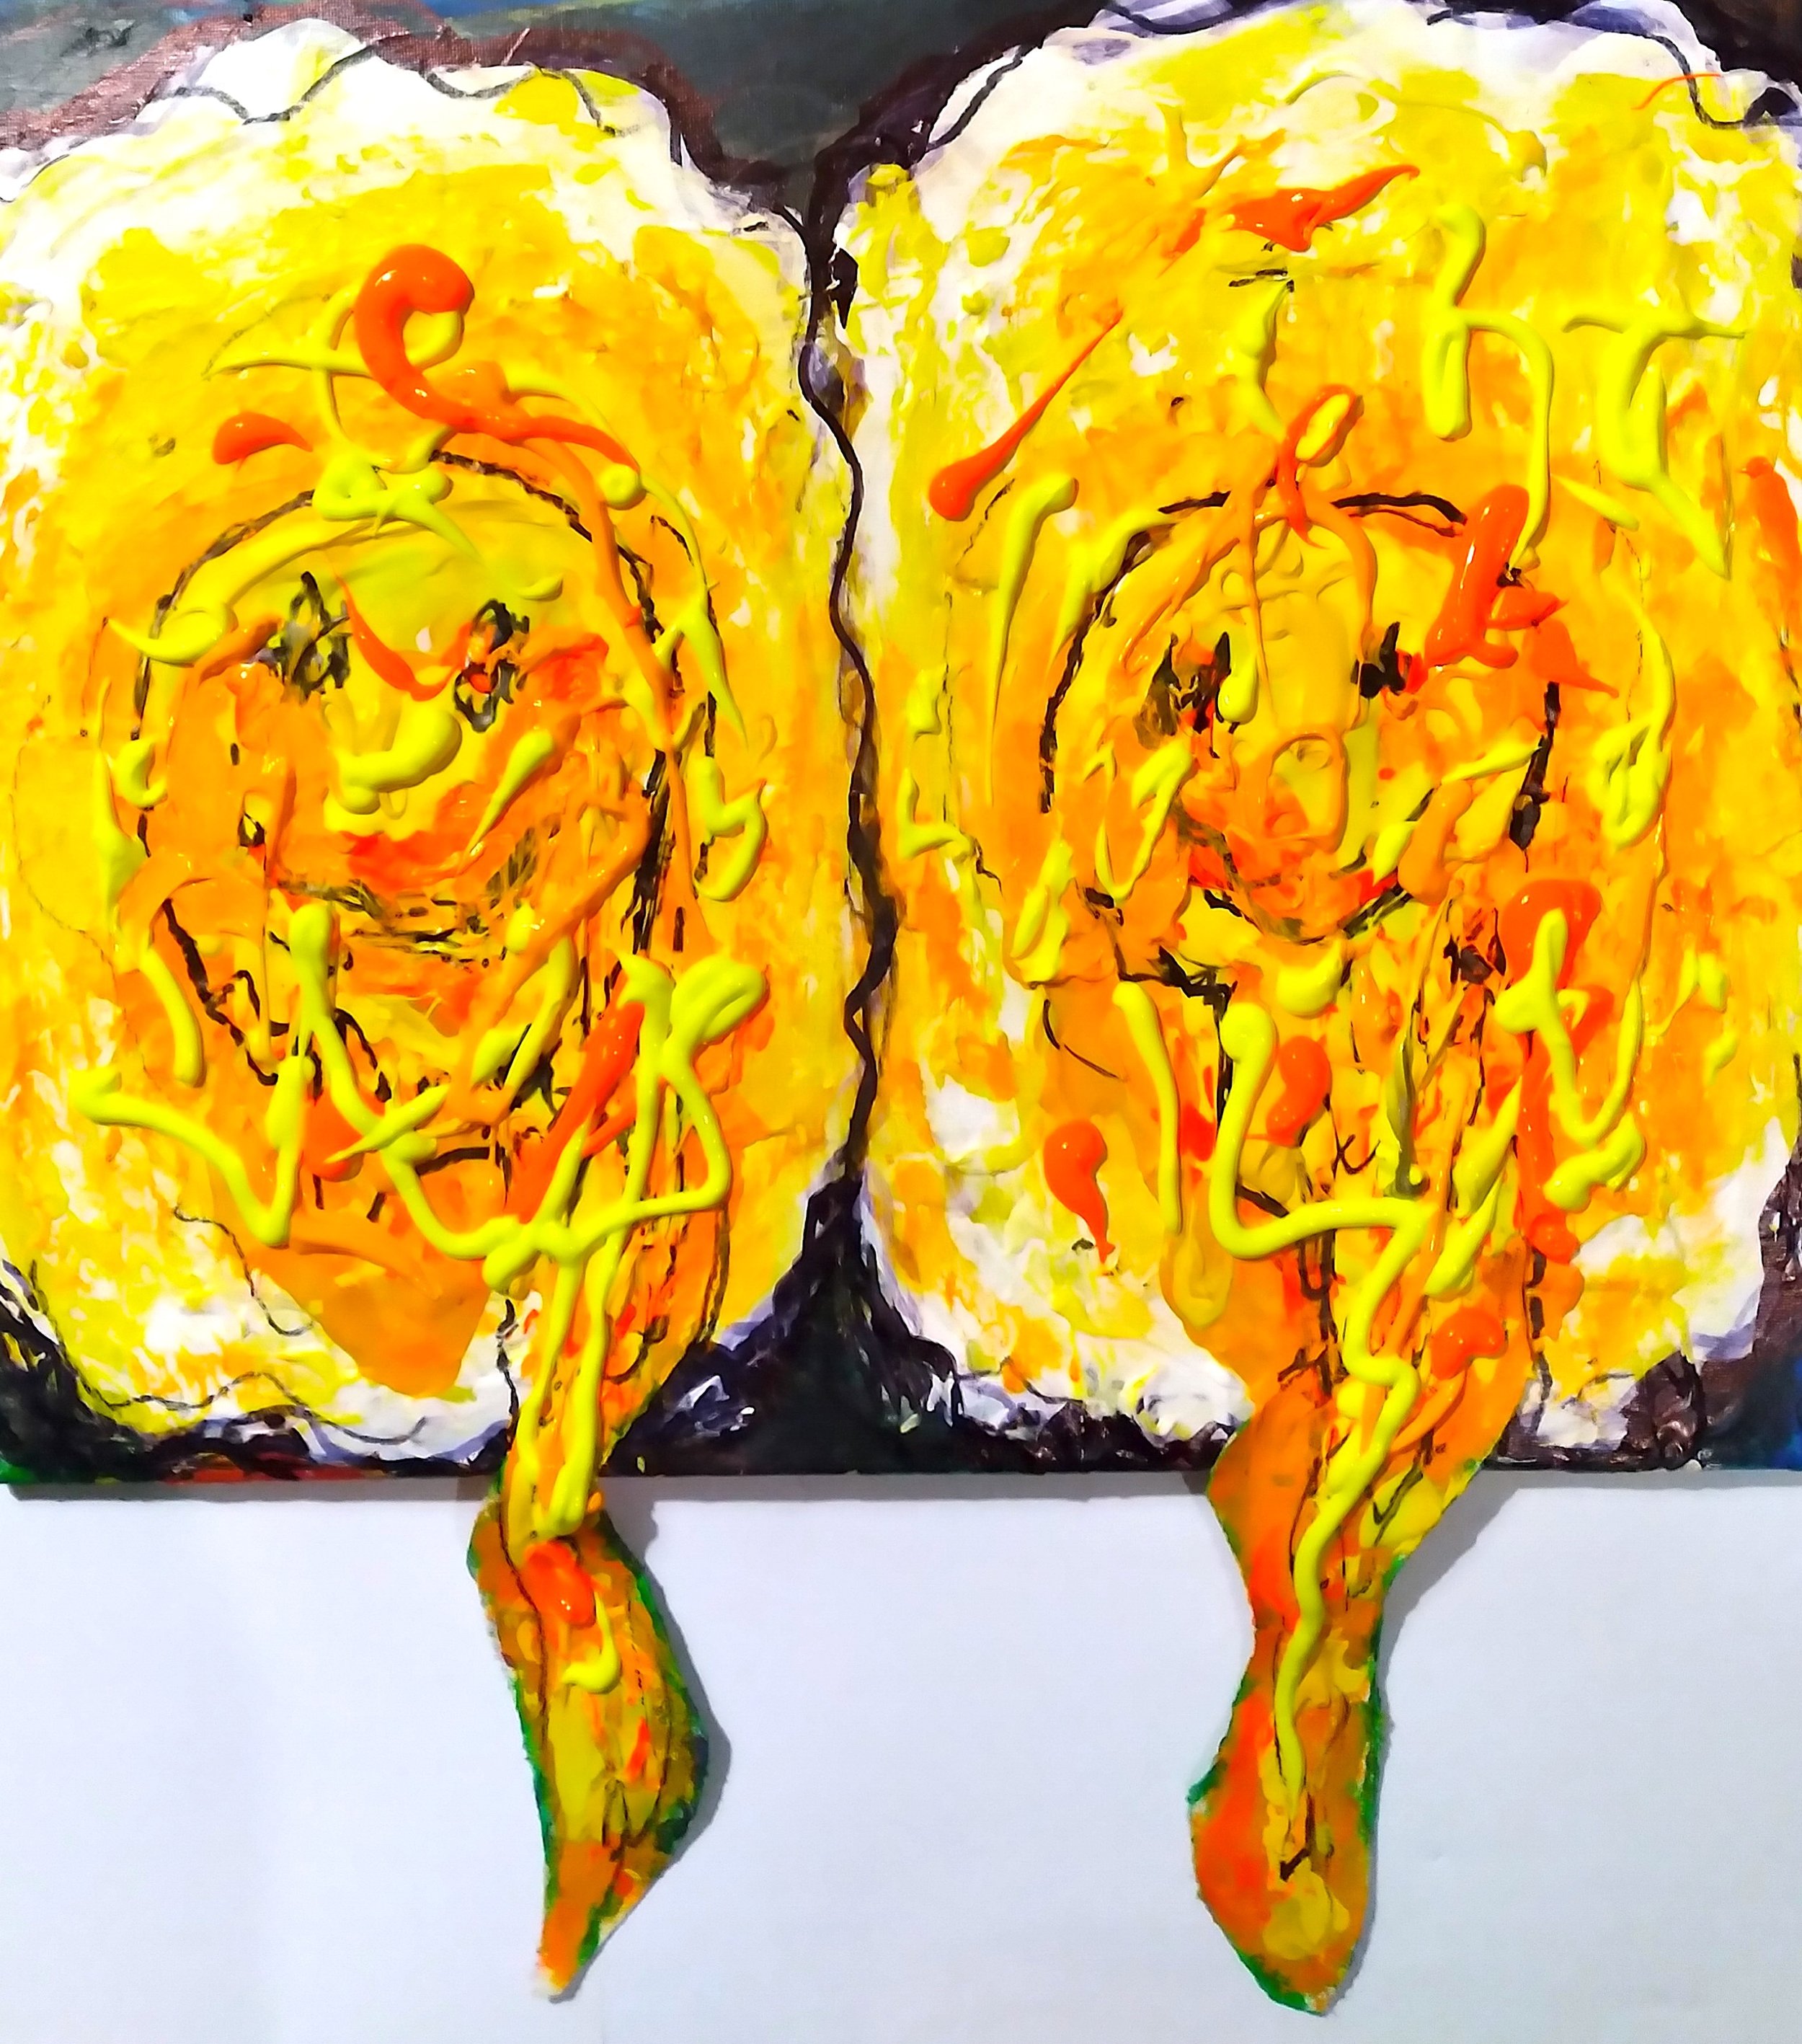 Over Easy Eggs, 2014. Oil, acrylic on canvas. 16” x 20”.